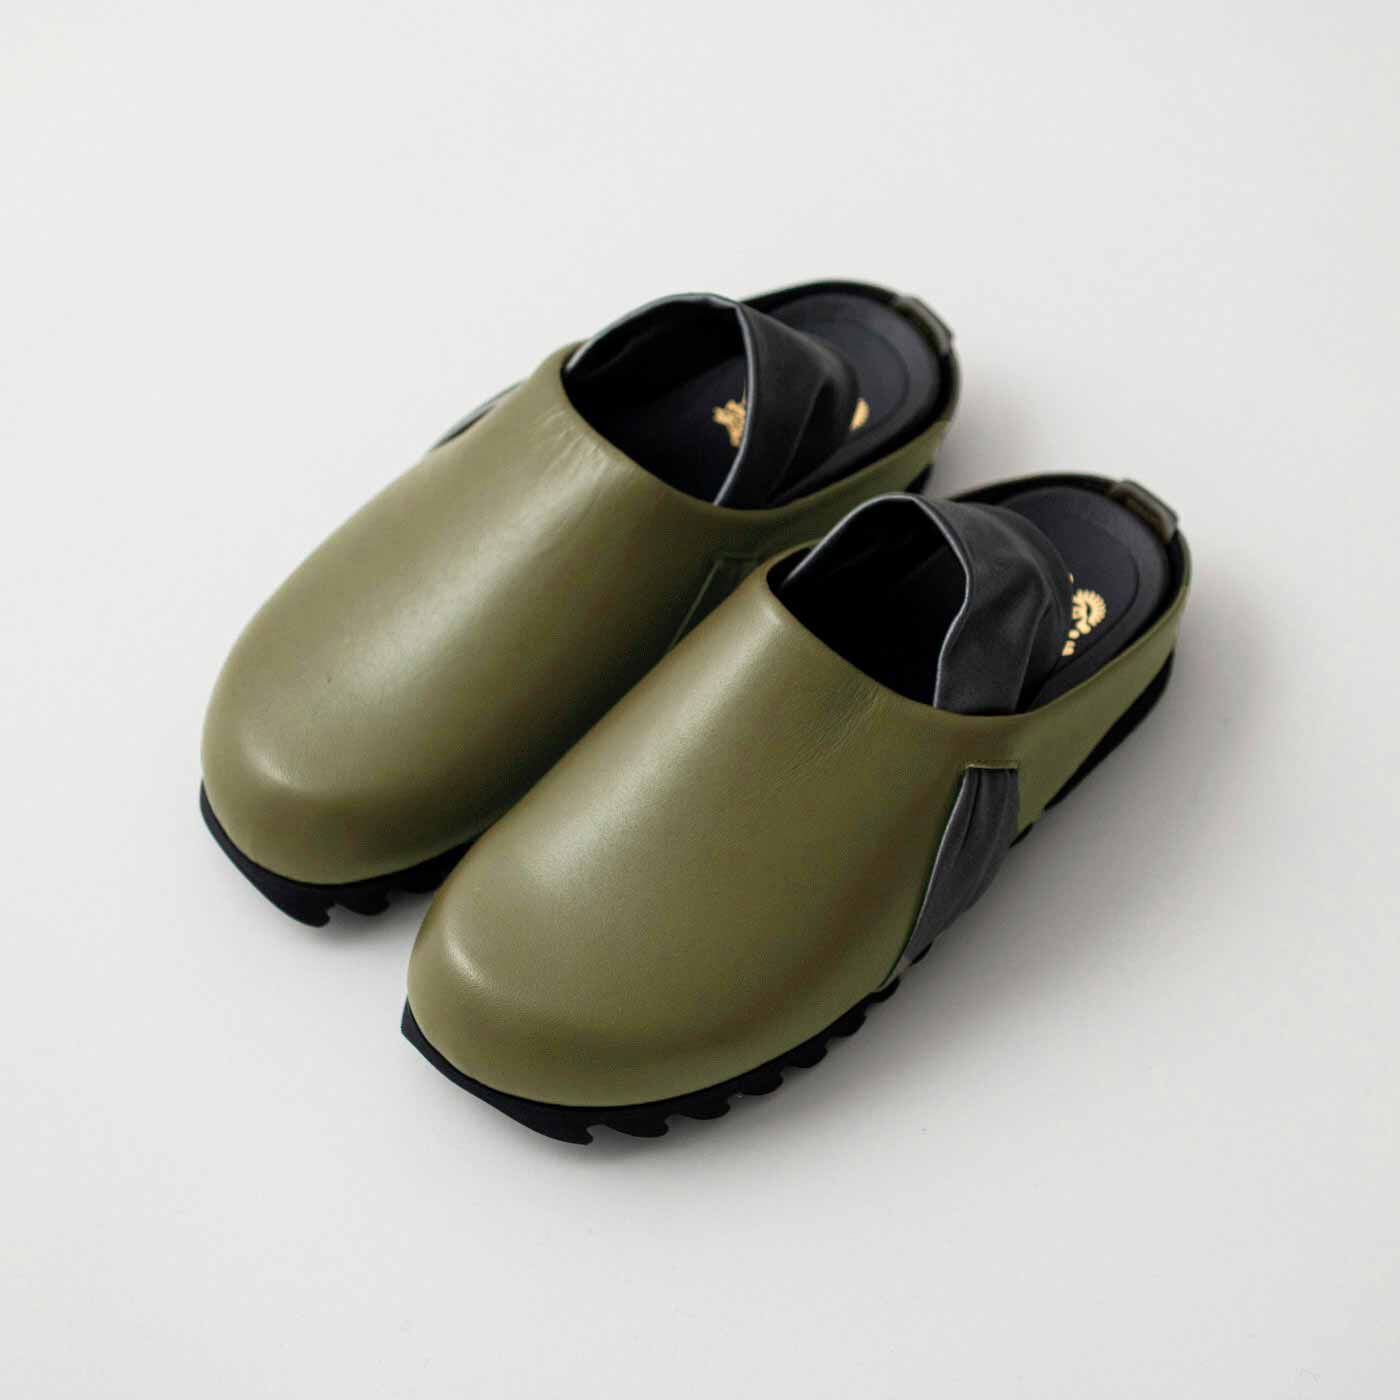 ＆Stories|長田の靴職人が作った　職人本革のパニーニサボシューズ〈オリーブ色〉|縮こまった足指が広がって、どこまでも歩けてしまいそう。感動的な履きやすさ。